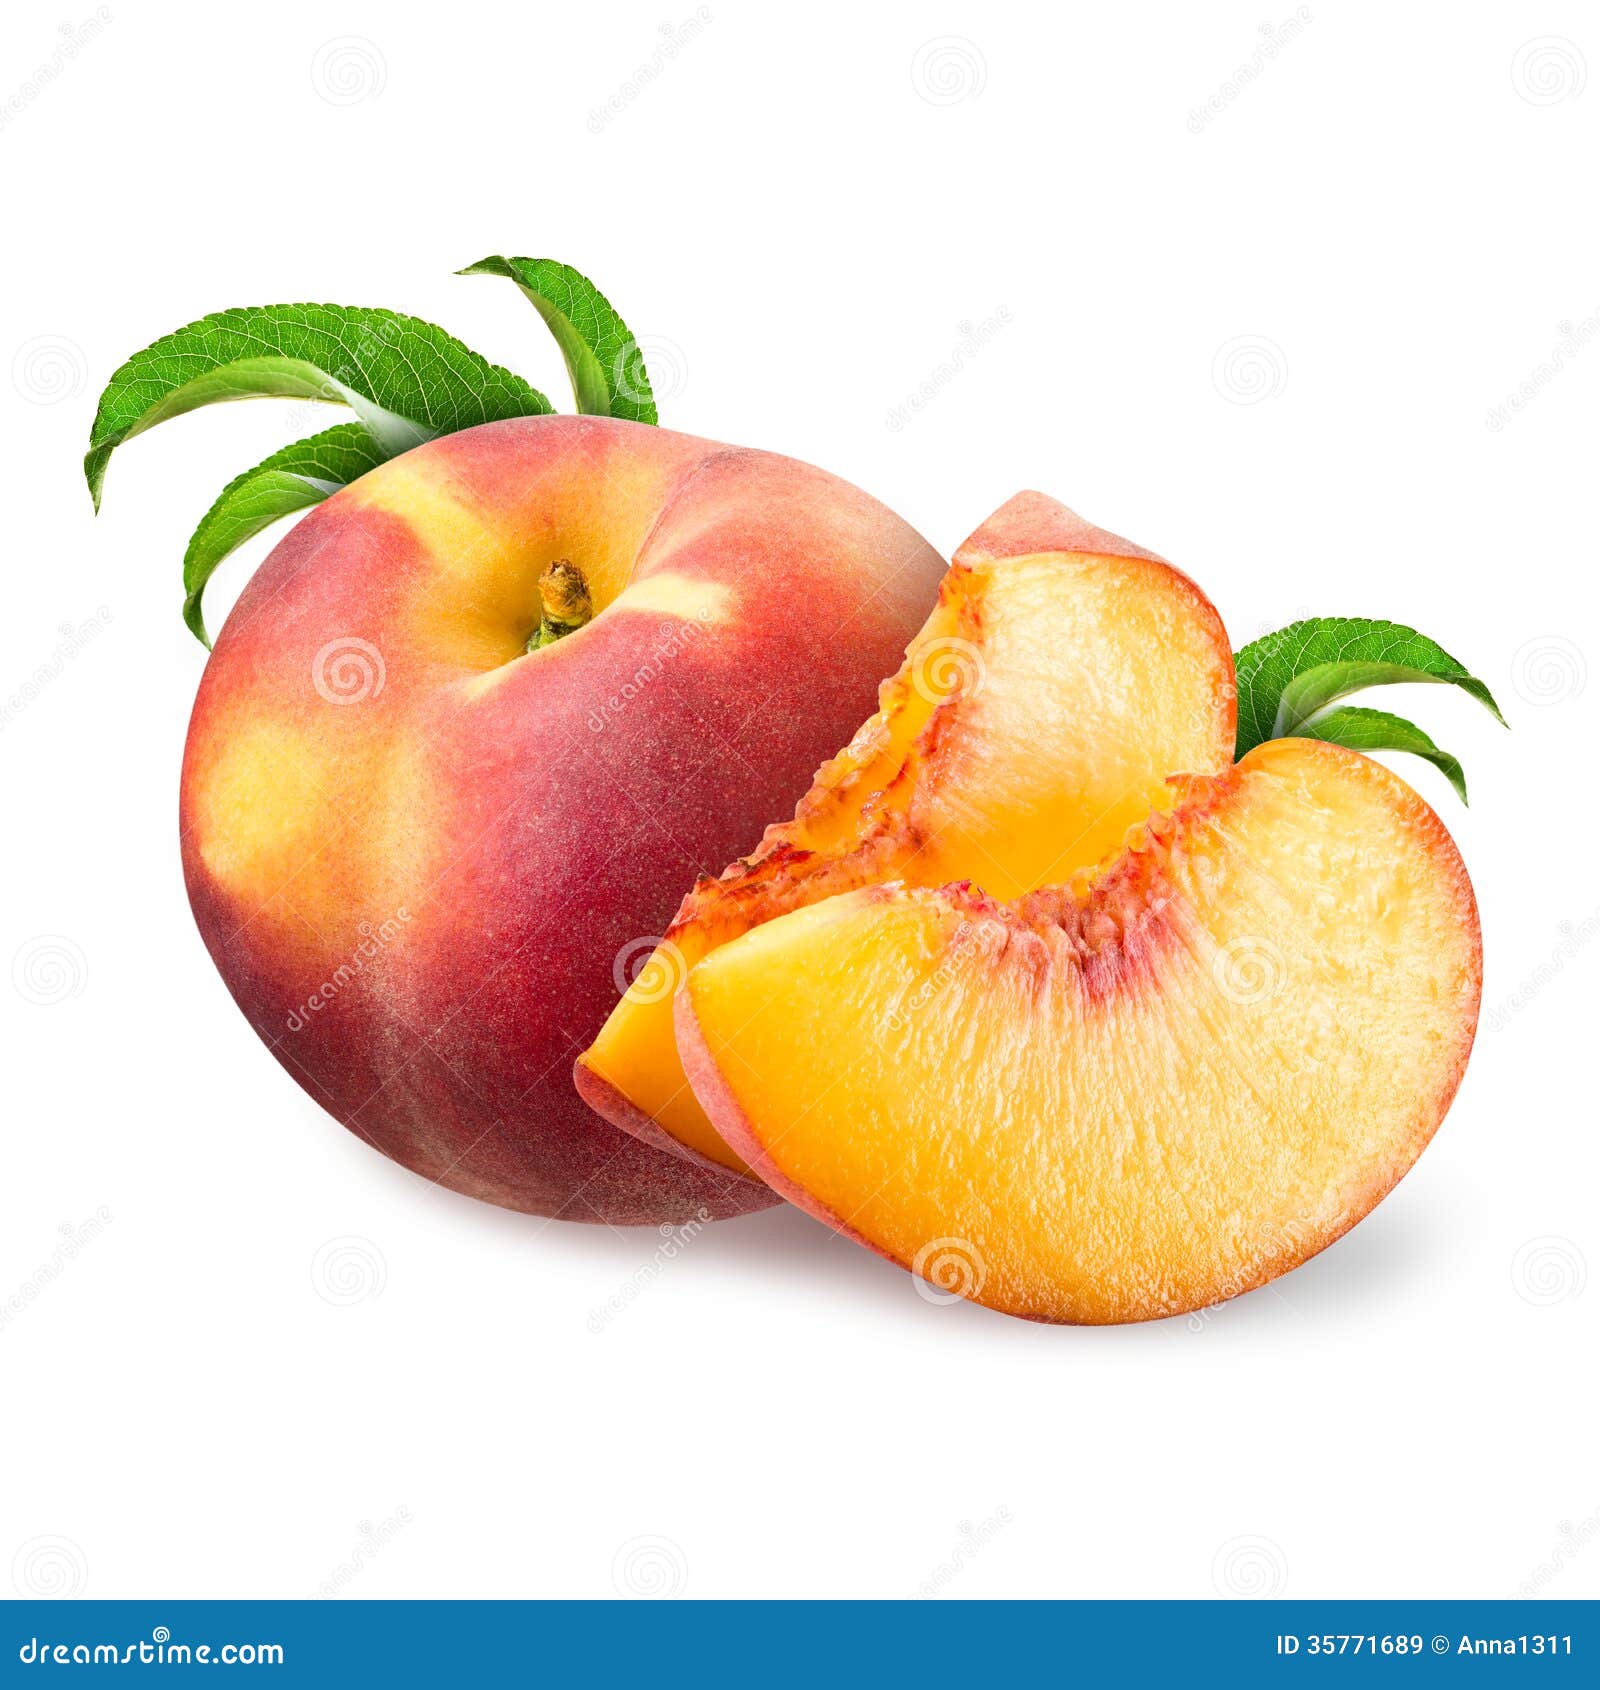 peach  on white